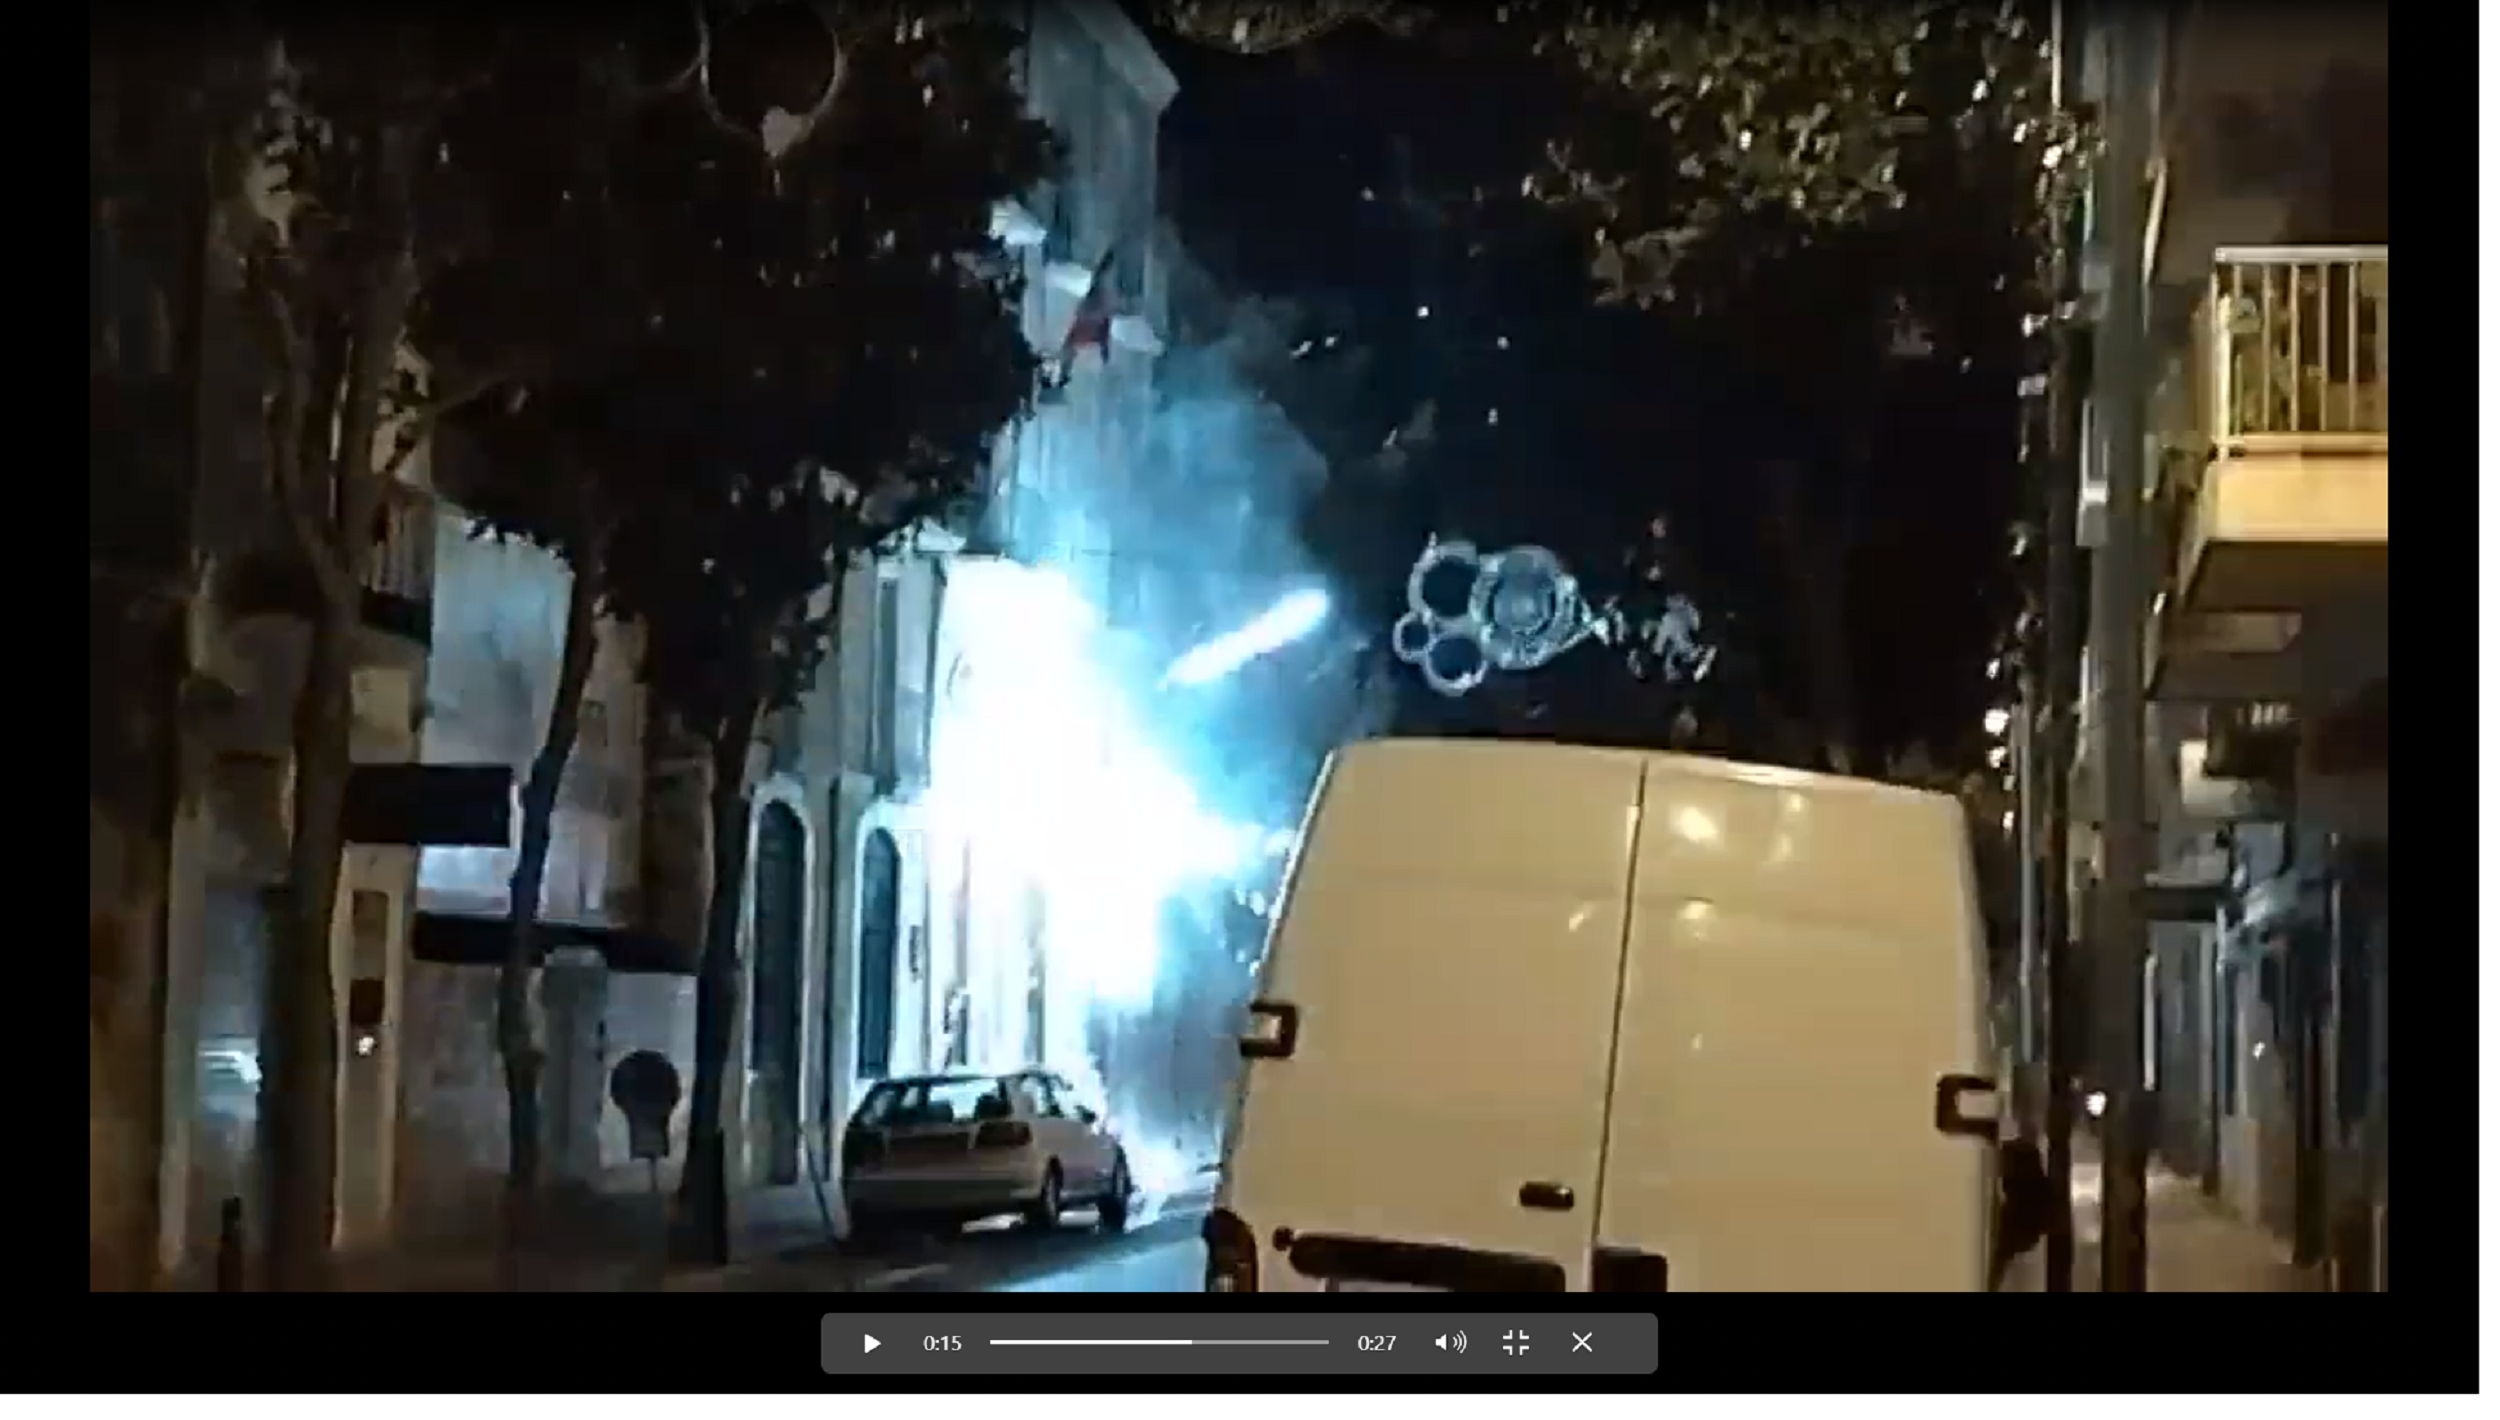 Traca contra el cuartel de la Guardia Civil en Figueres: "¡Que se vayan!"